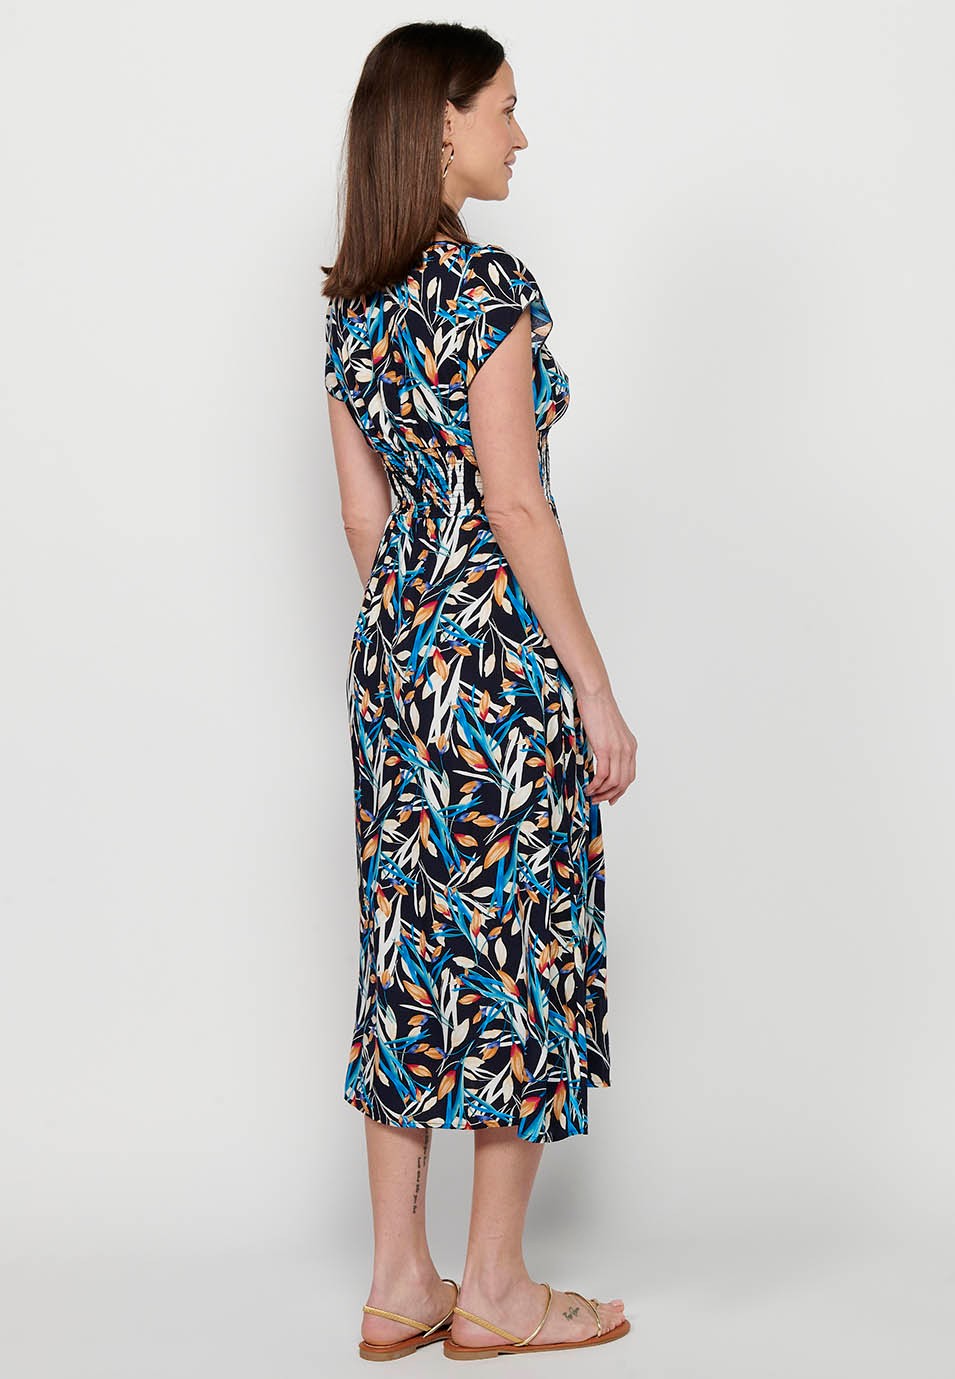 Damen-Kleid mit mehrfarbigem Blumendruck, V-Ausschnitt, kurzen Ärmeln und Schlitz vorne 6